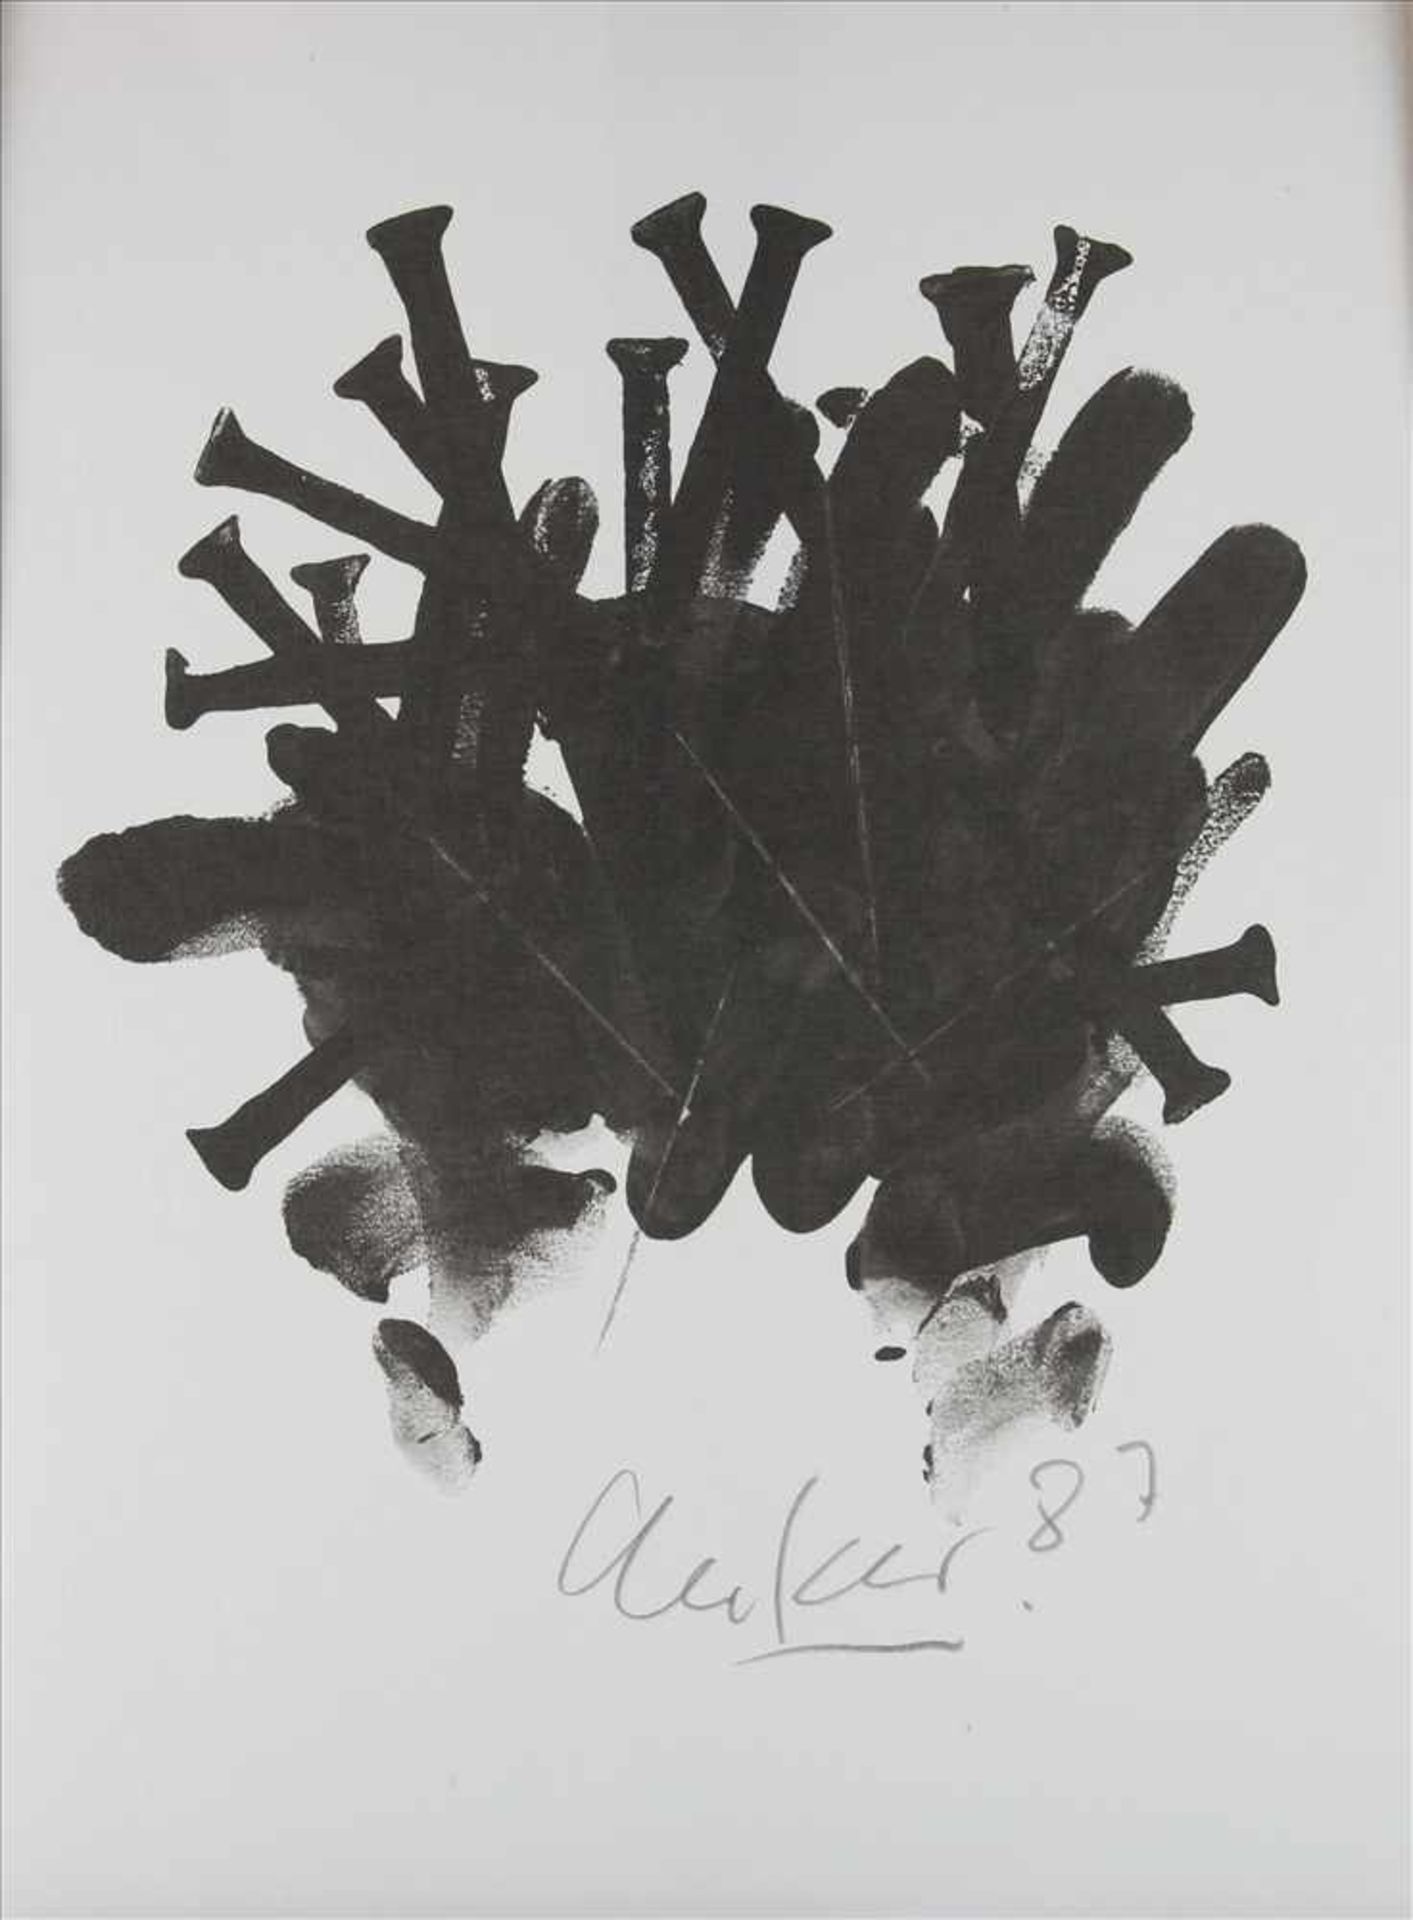 Uecker, Günther* 1930 Wendorf. Nagelkreuzung. Offsetlithographie auf Bütten. Unten handsigniert